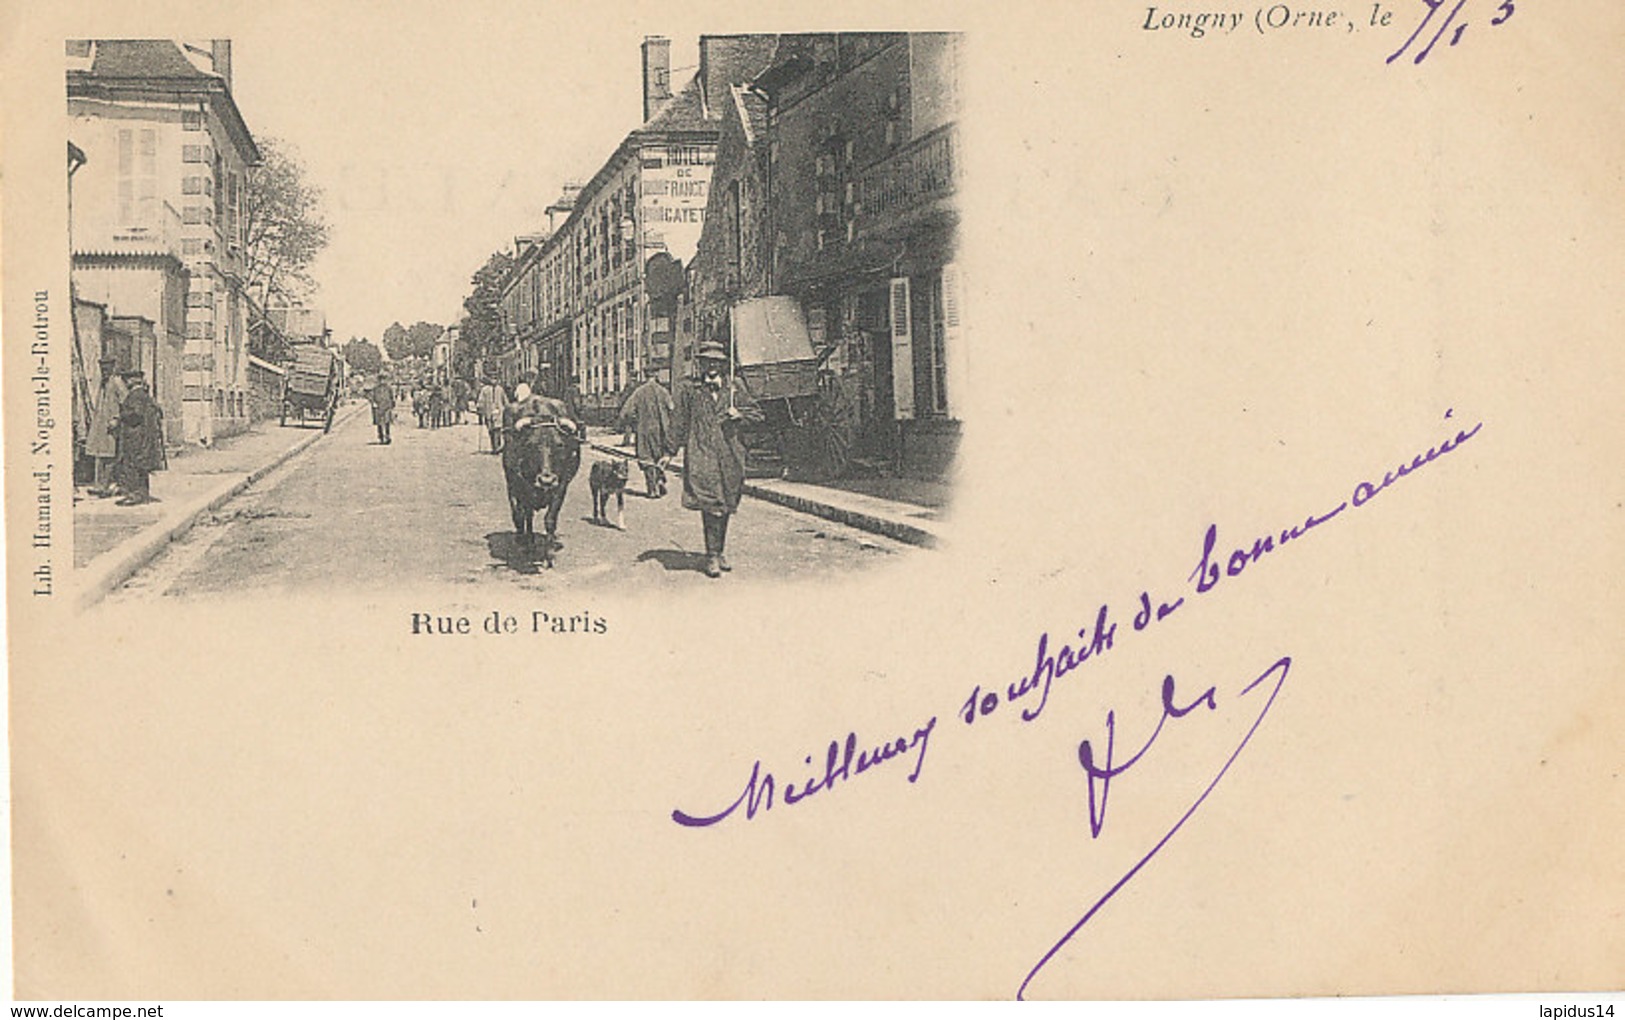 AM 836 / C P A  - LONGNY    (61)  RUE DE PARIS - Longny Au Perche